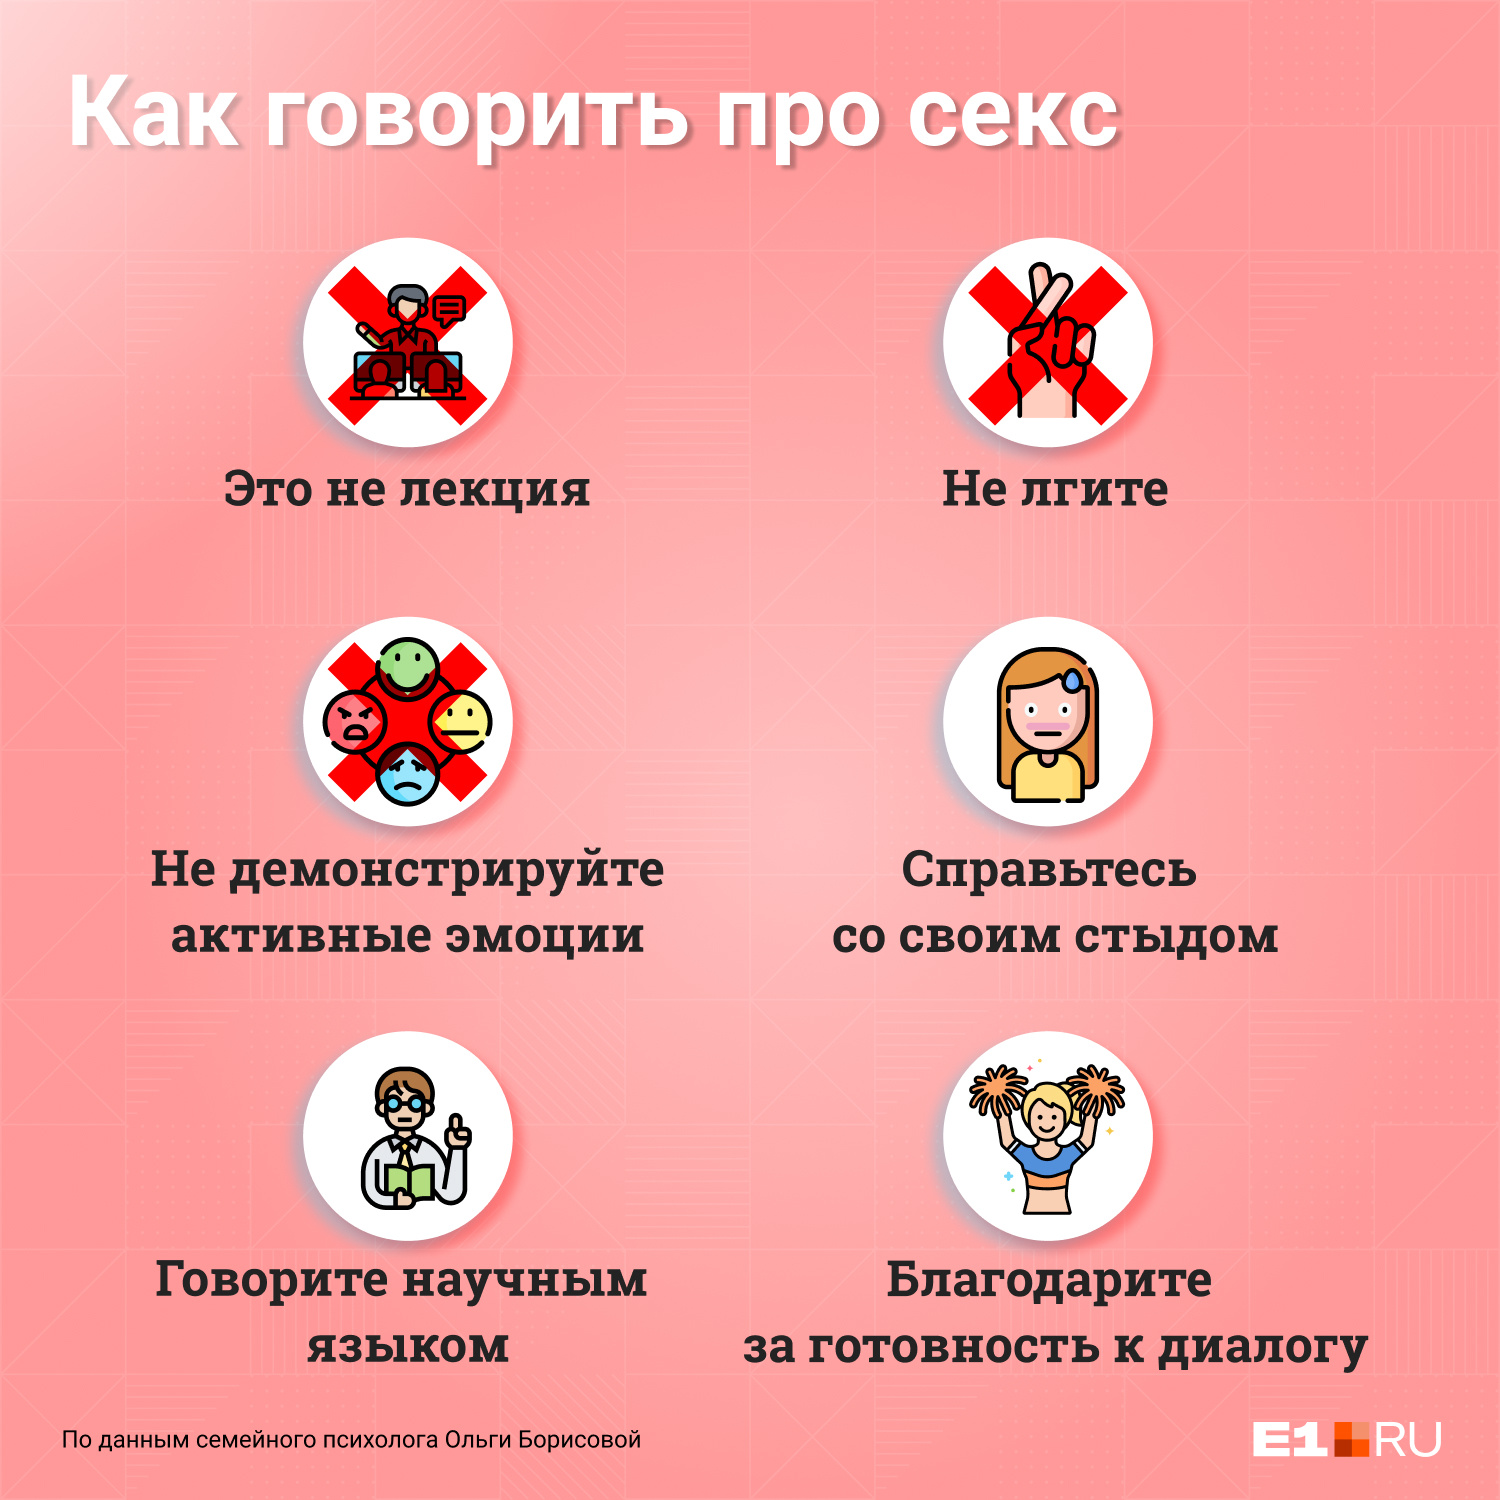 11 тысяч детей в год рожают девочки младше 18 лет в России